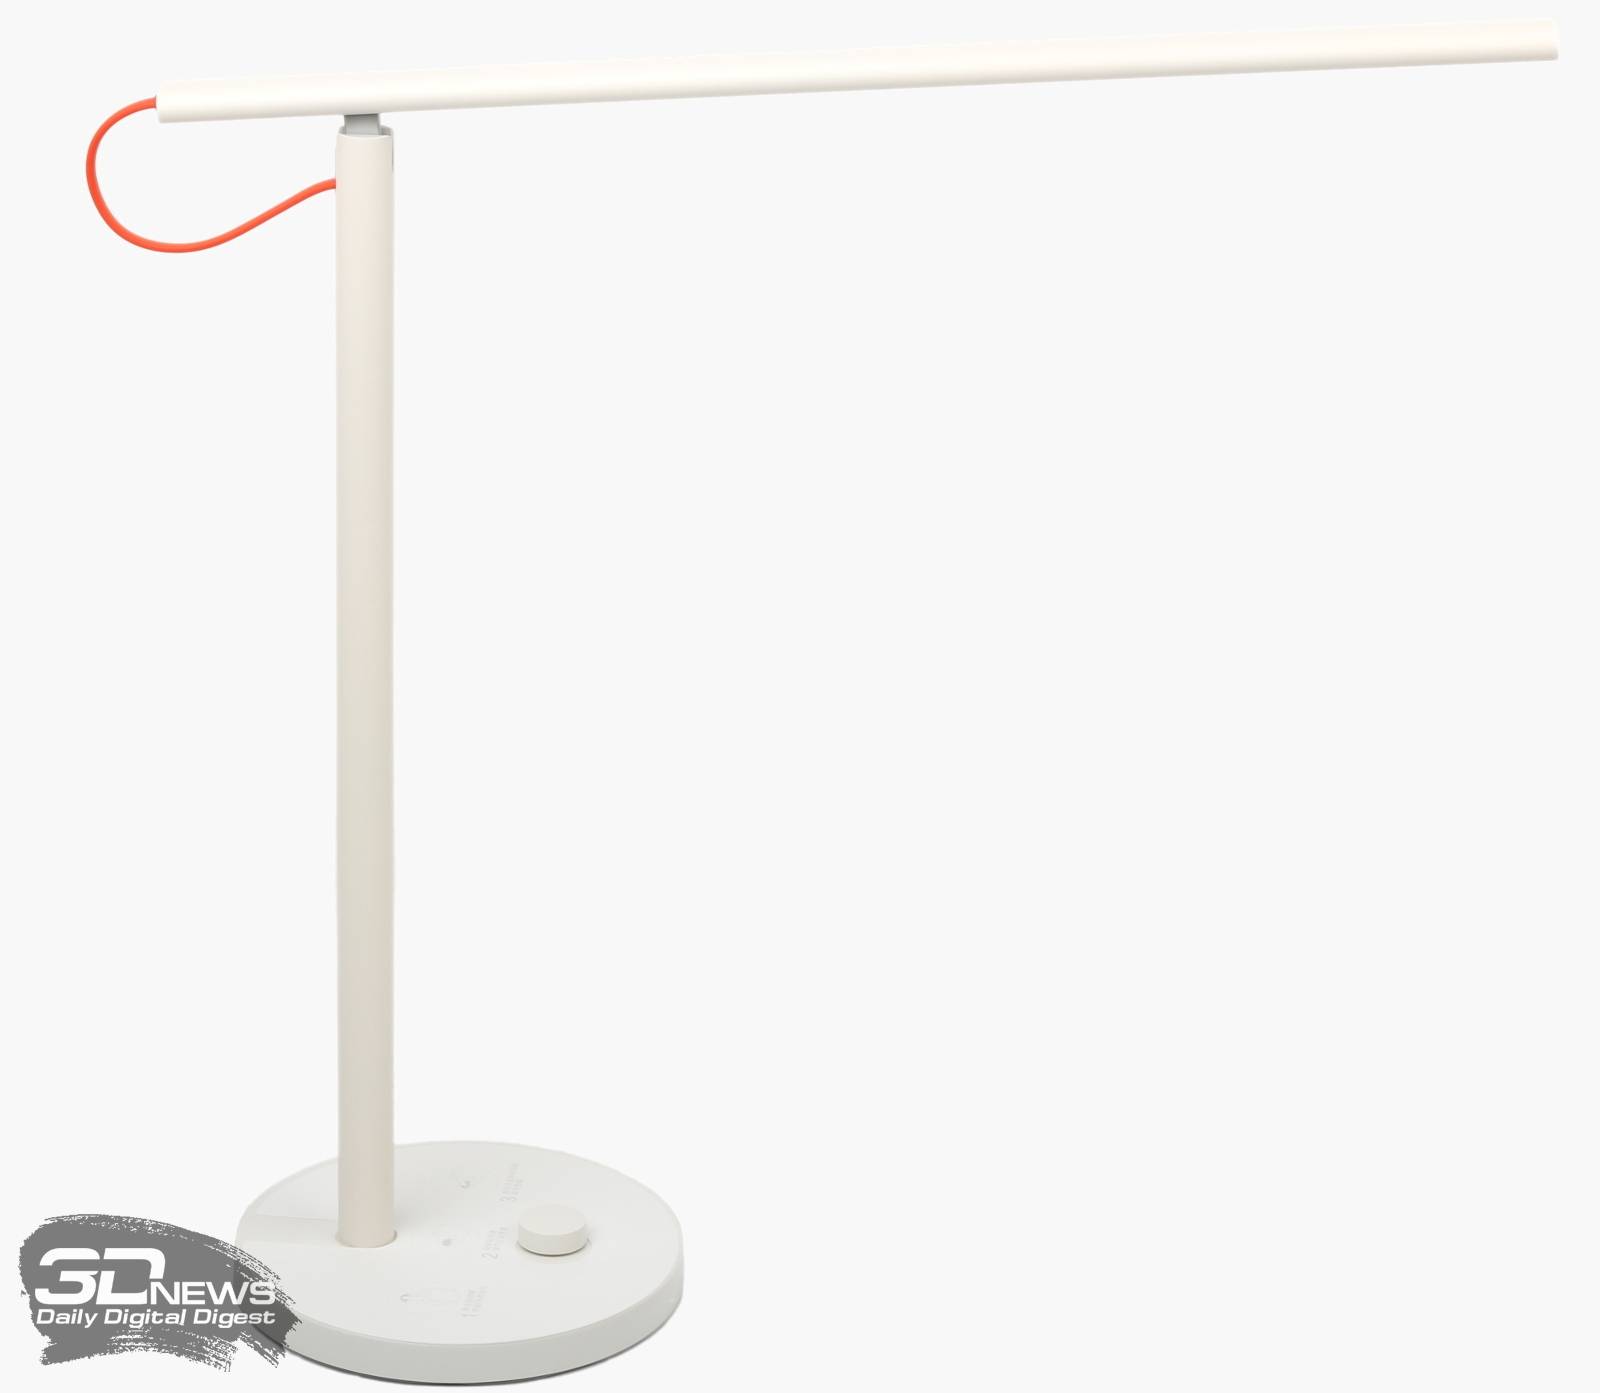 Обзор умной настольной лампы xiaomi mi led desk lamp 1s — настройка yeelight